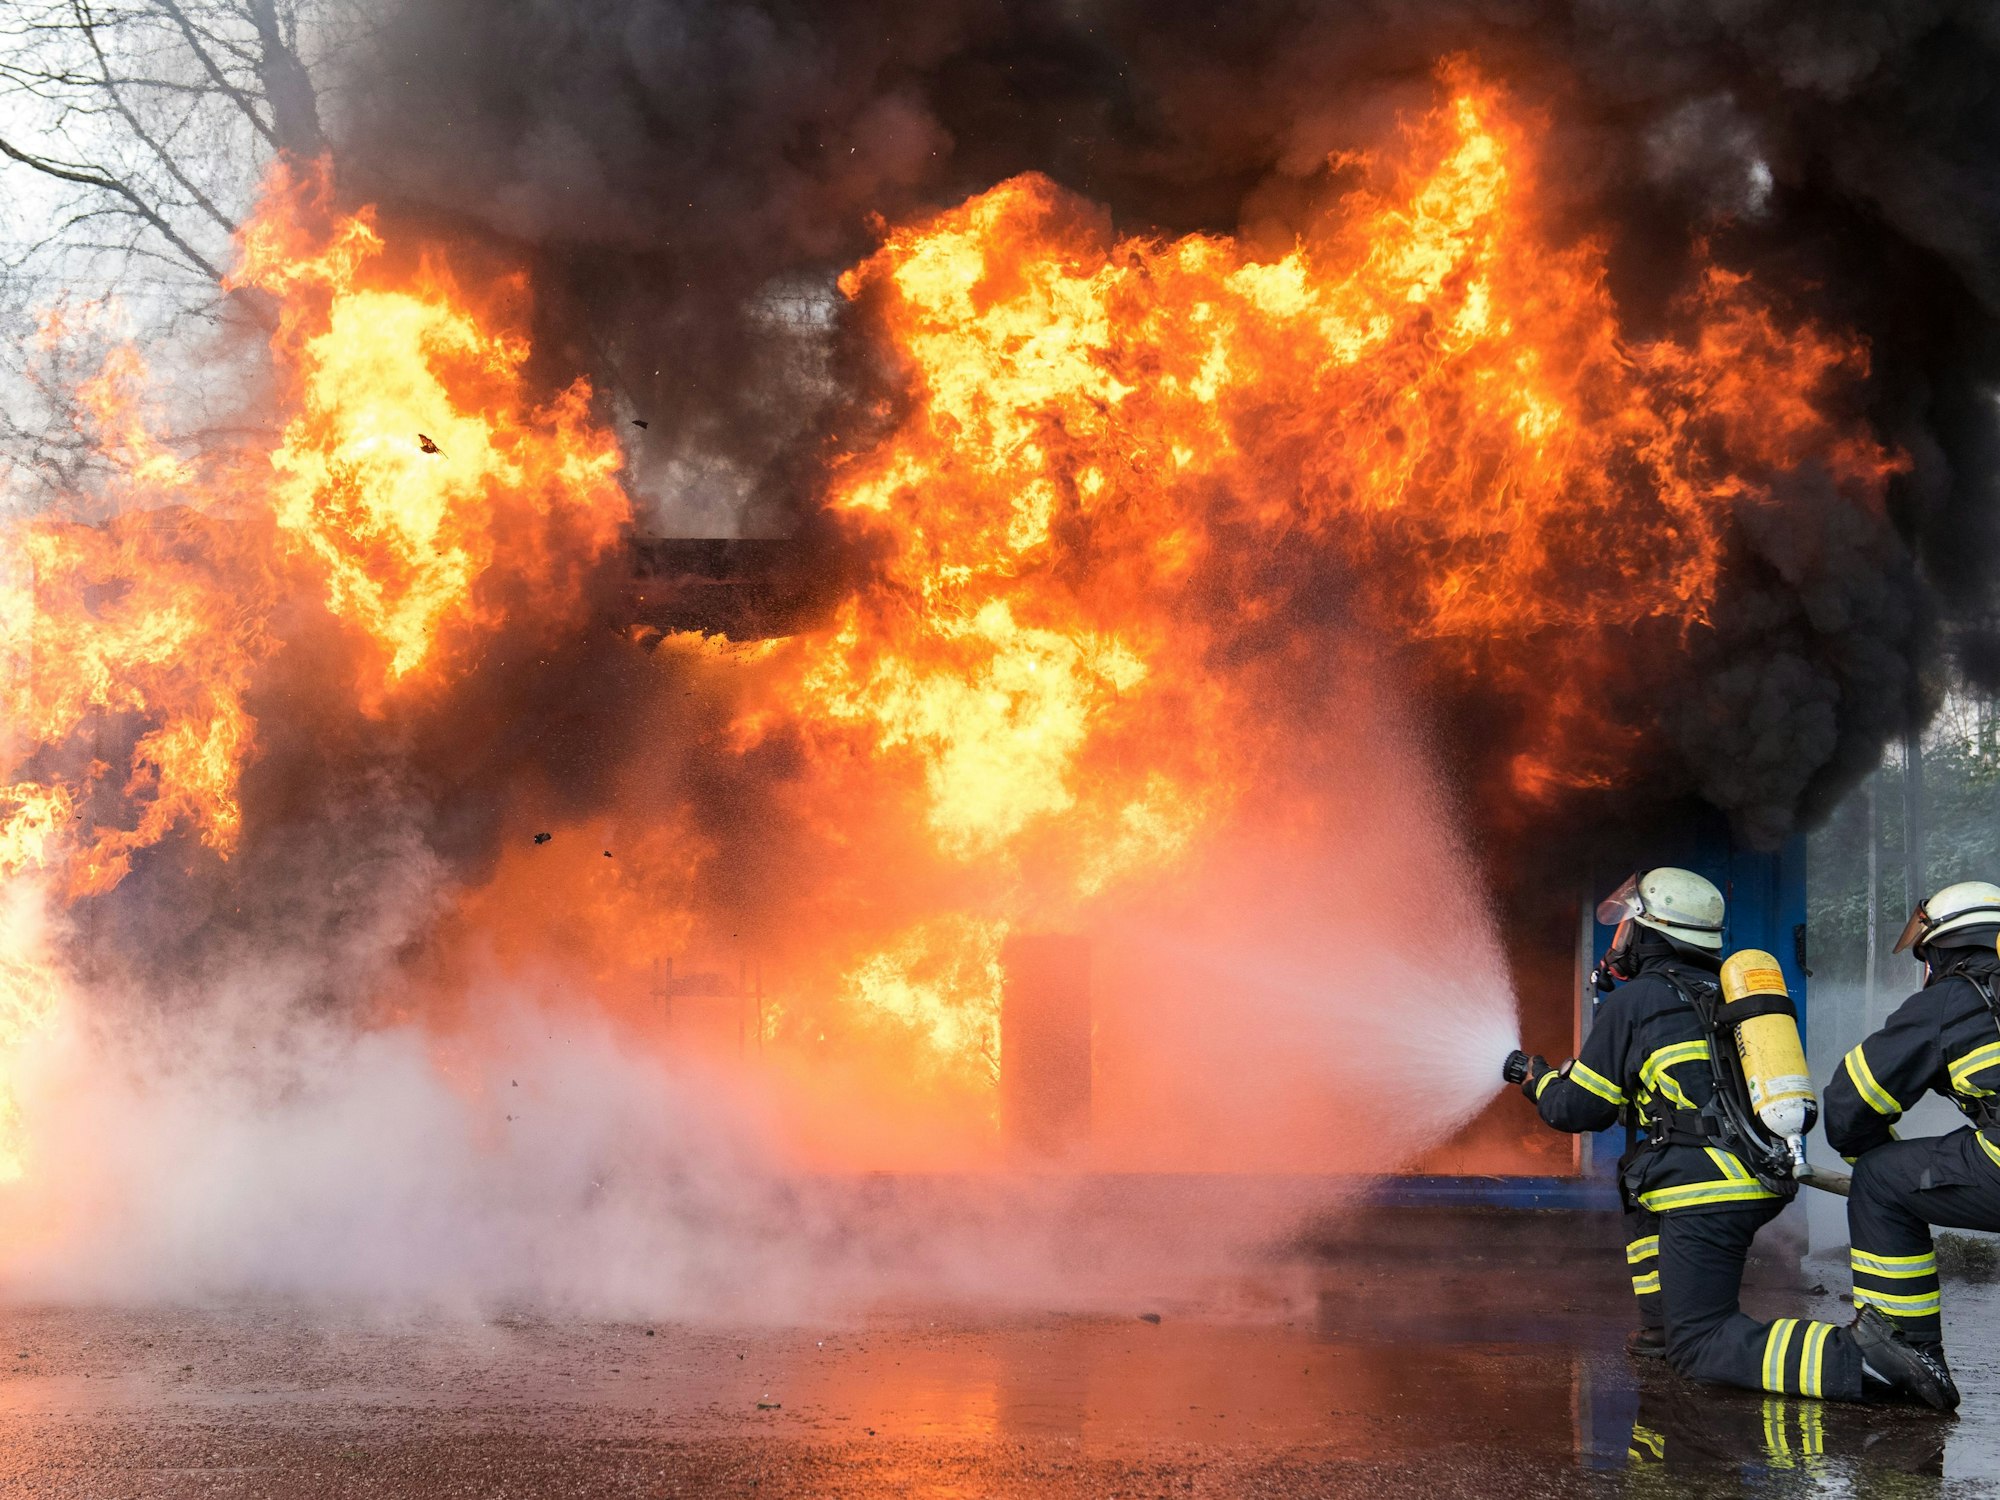 Bei einem Großbrand auf einem Campingplatz in Roth (Bayern) wurden mehrere Menschen verletzt. Unser Symbolfoto zeigt Einsatzkräfte der Feuerwehr bei einer Übung.